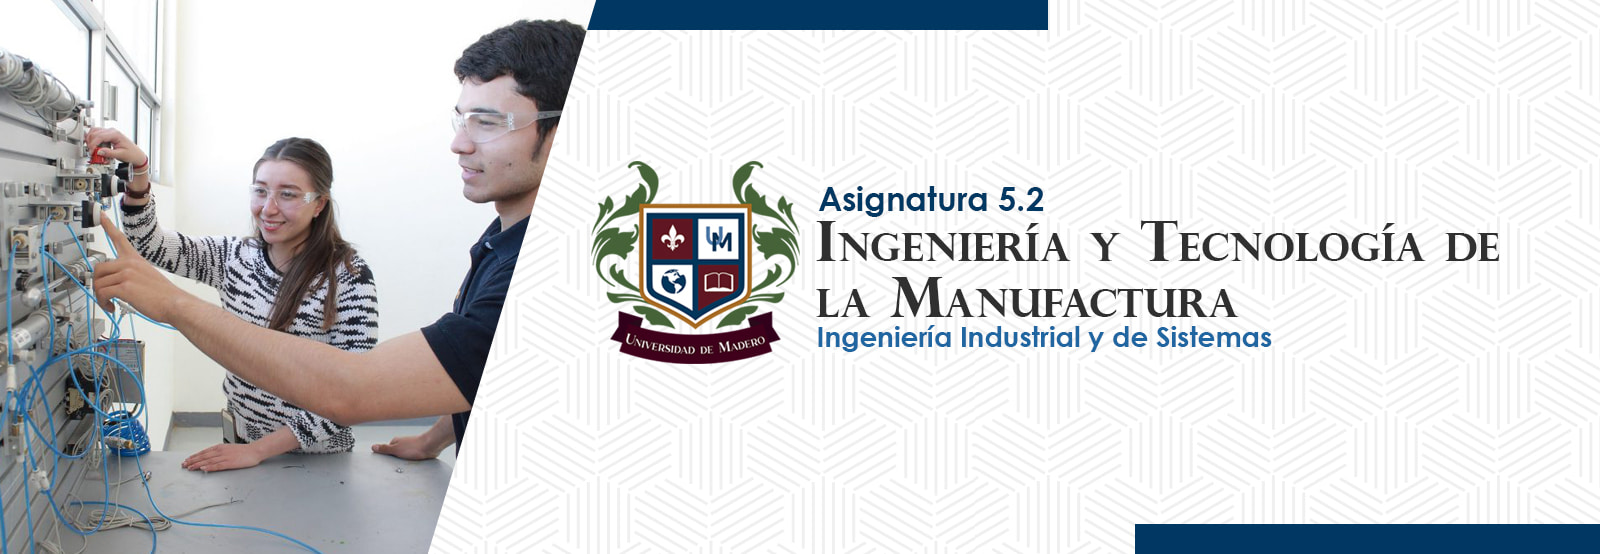 IIS0502 Ingeniería y Tecnología de la Manufactura